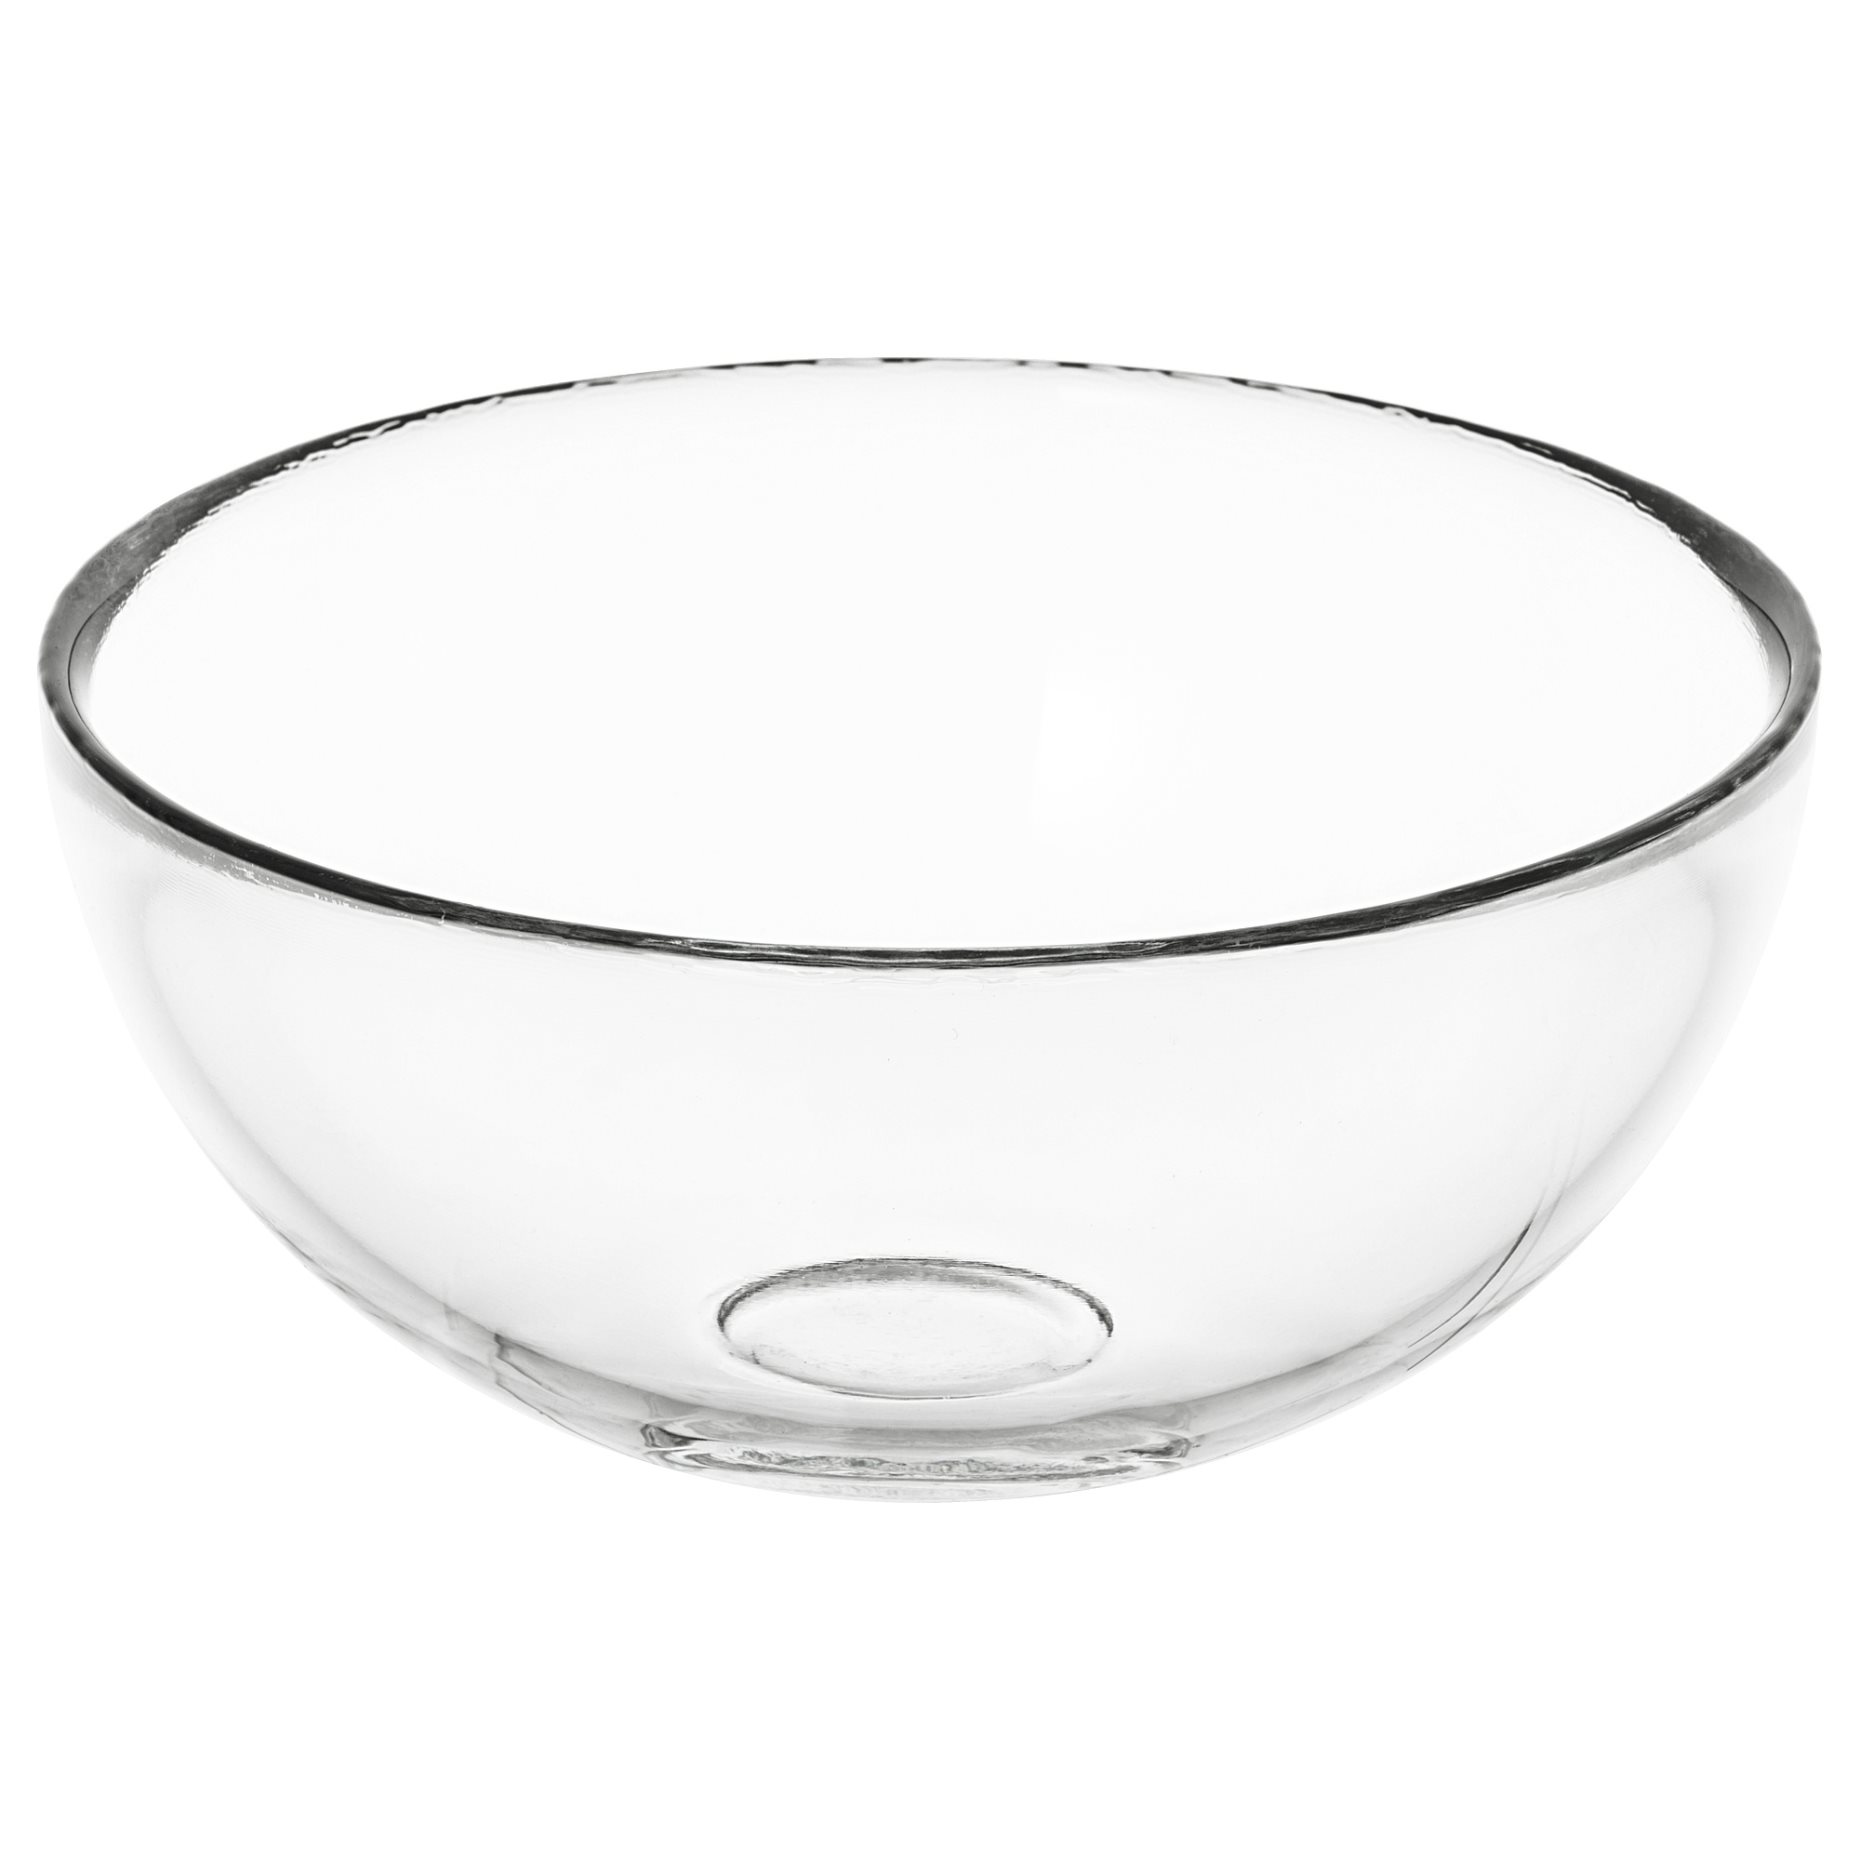 BLANDA, купа за сервиране, 12 см, прозрачно стъкло, 100.572.51